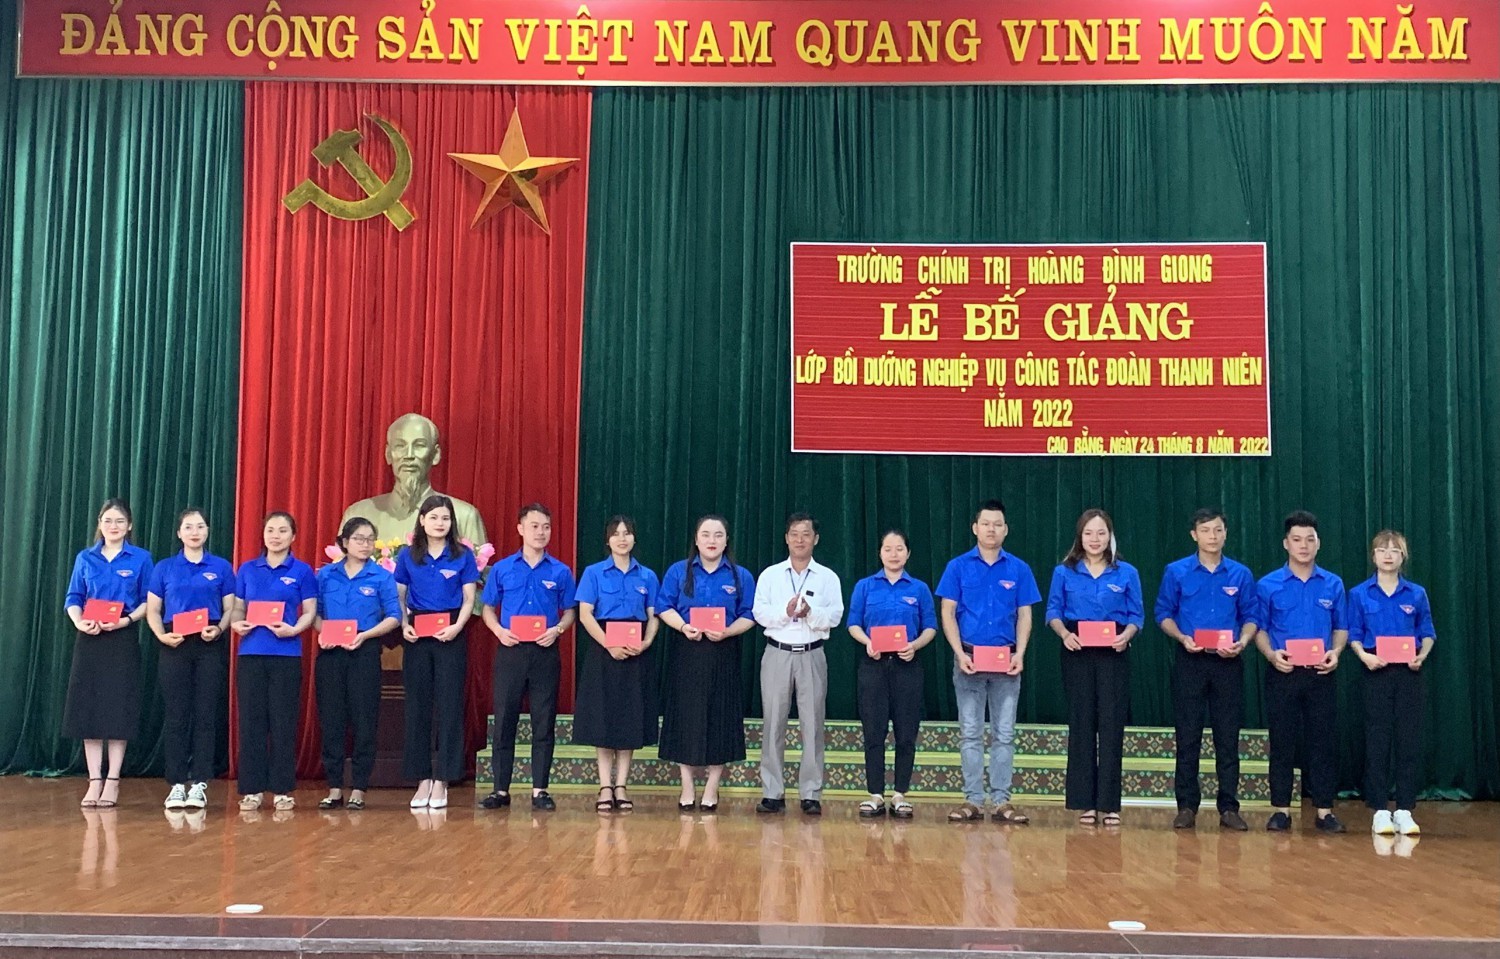 Đồng chí Nông Hoàng Hùng – Phó Bí thư Đảng ủy,  Phó hiệu trưởng Trường Chính trị Hoàng Đình Giong  trao chứng chỉ cho học viên